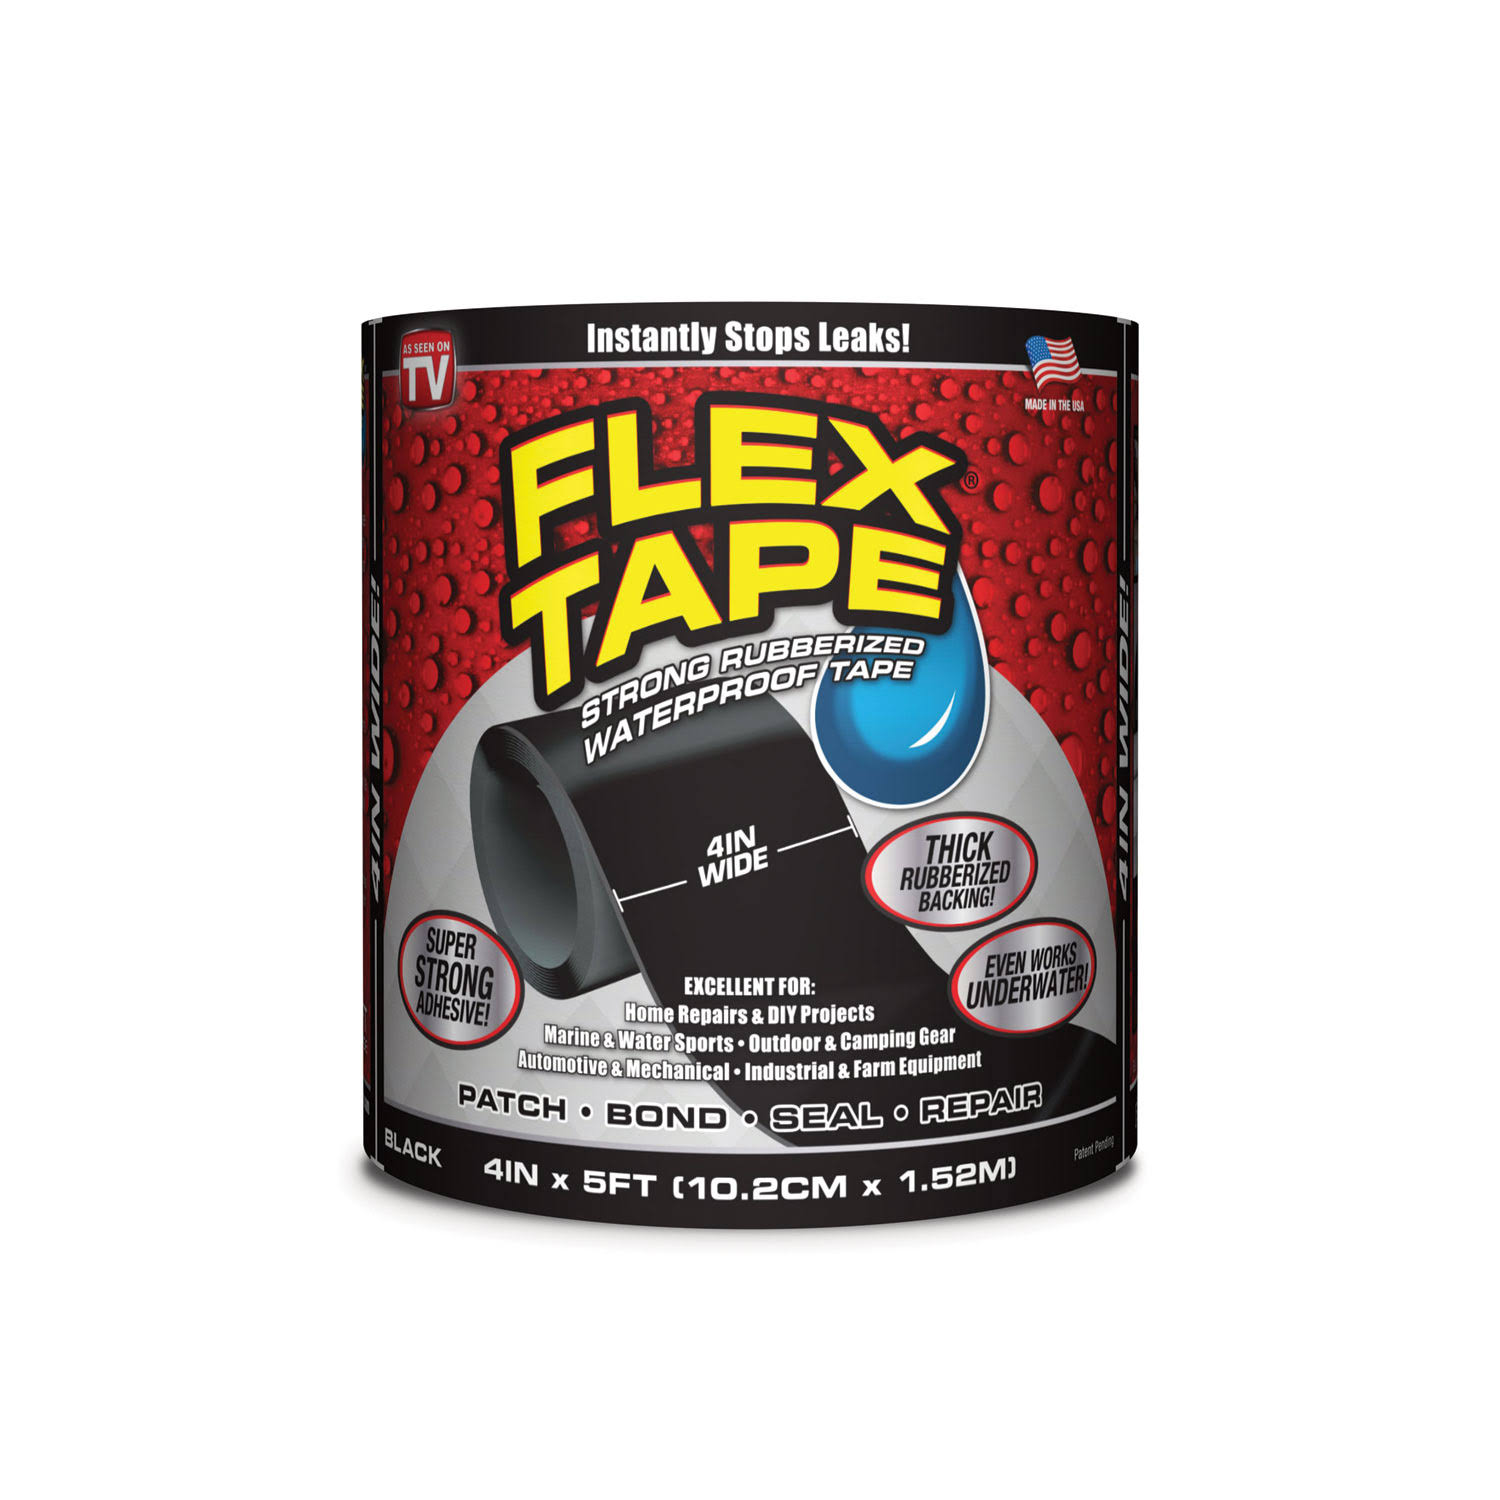 Flex Tape Strong Rubberized Waterproof Tape - Black, 4in x 5ft